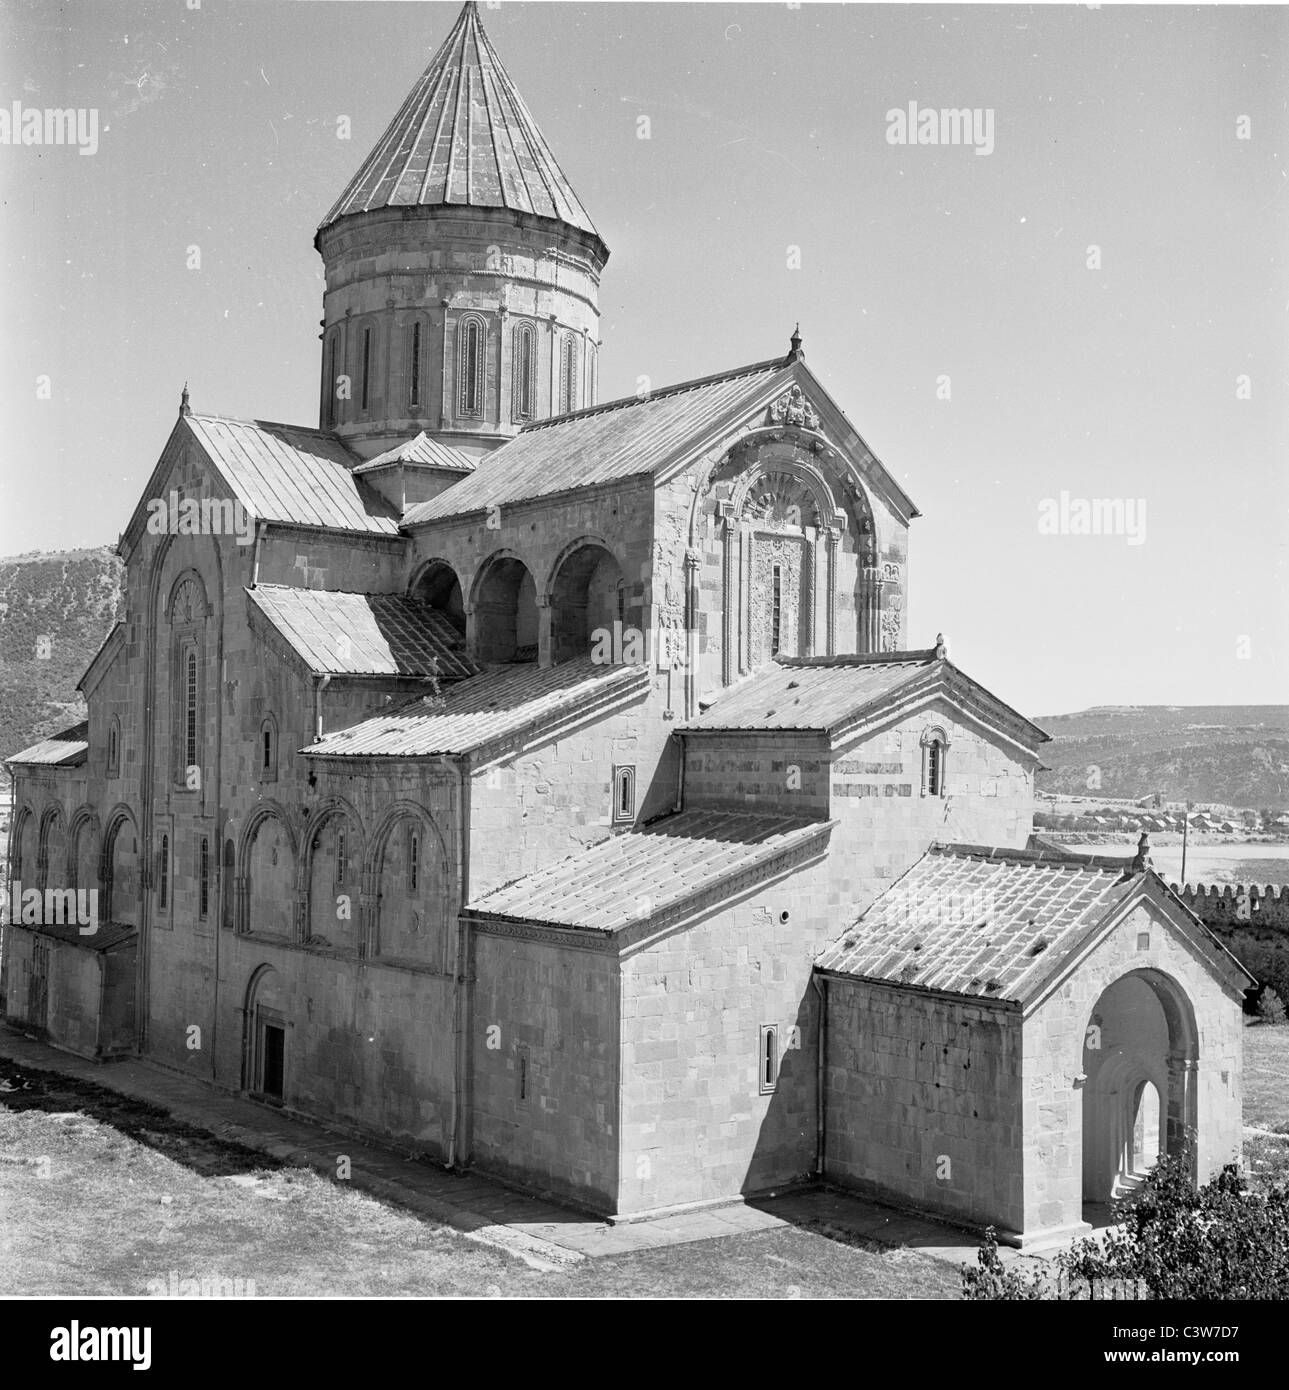 der 1950er Jahre in dieses Geschichtsbild durch J Allan Cash sehen wir eine Kirche mit vielen verschiedenen mittelgroßen Dächer und Turm, Nitskheta, Georgia. Stockfoto